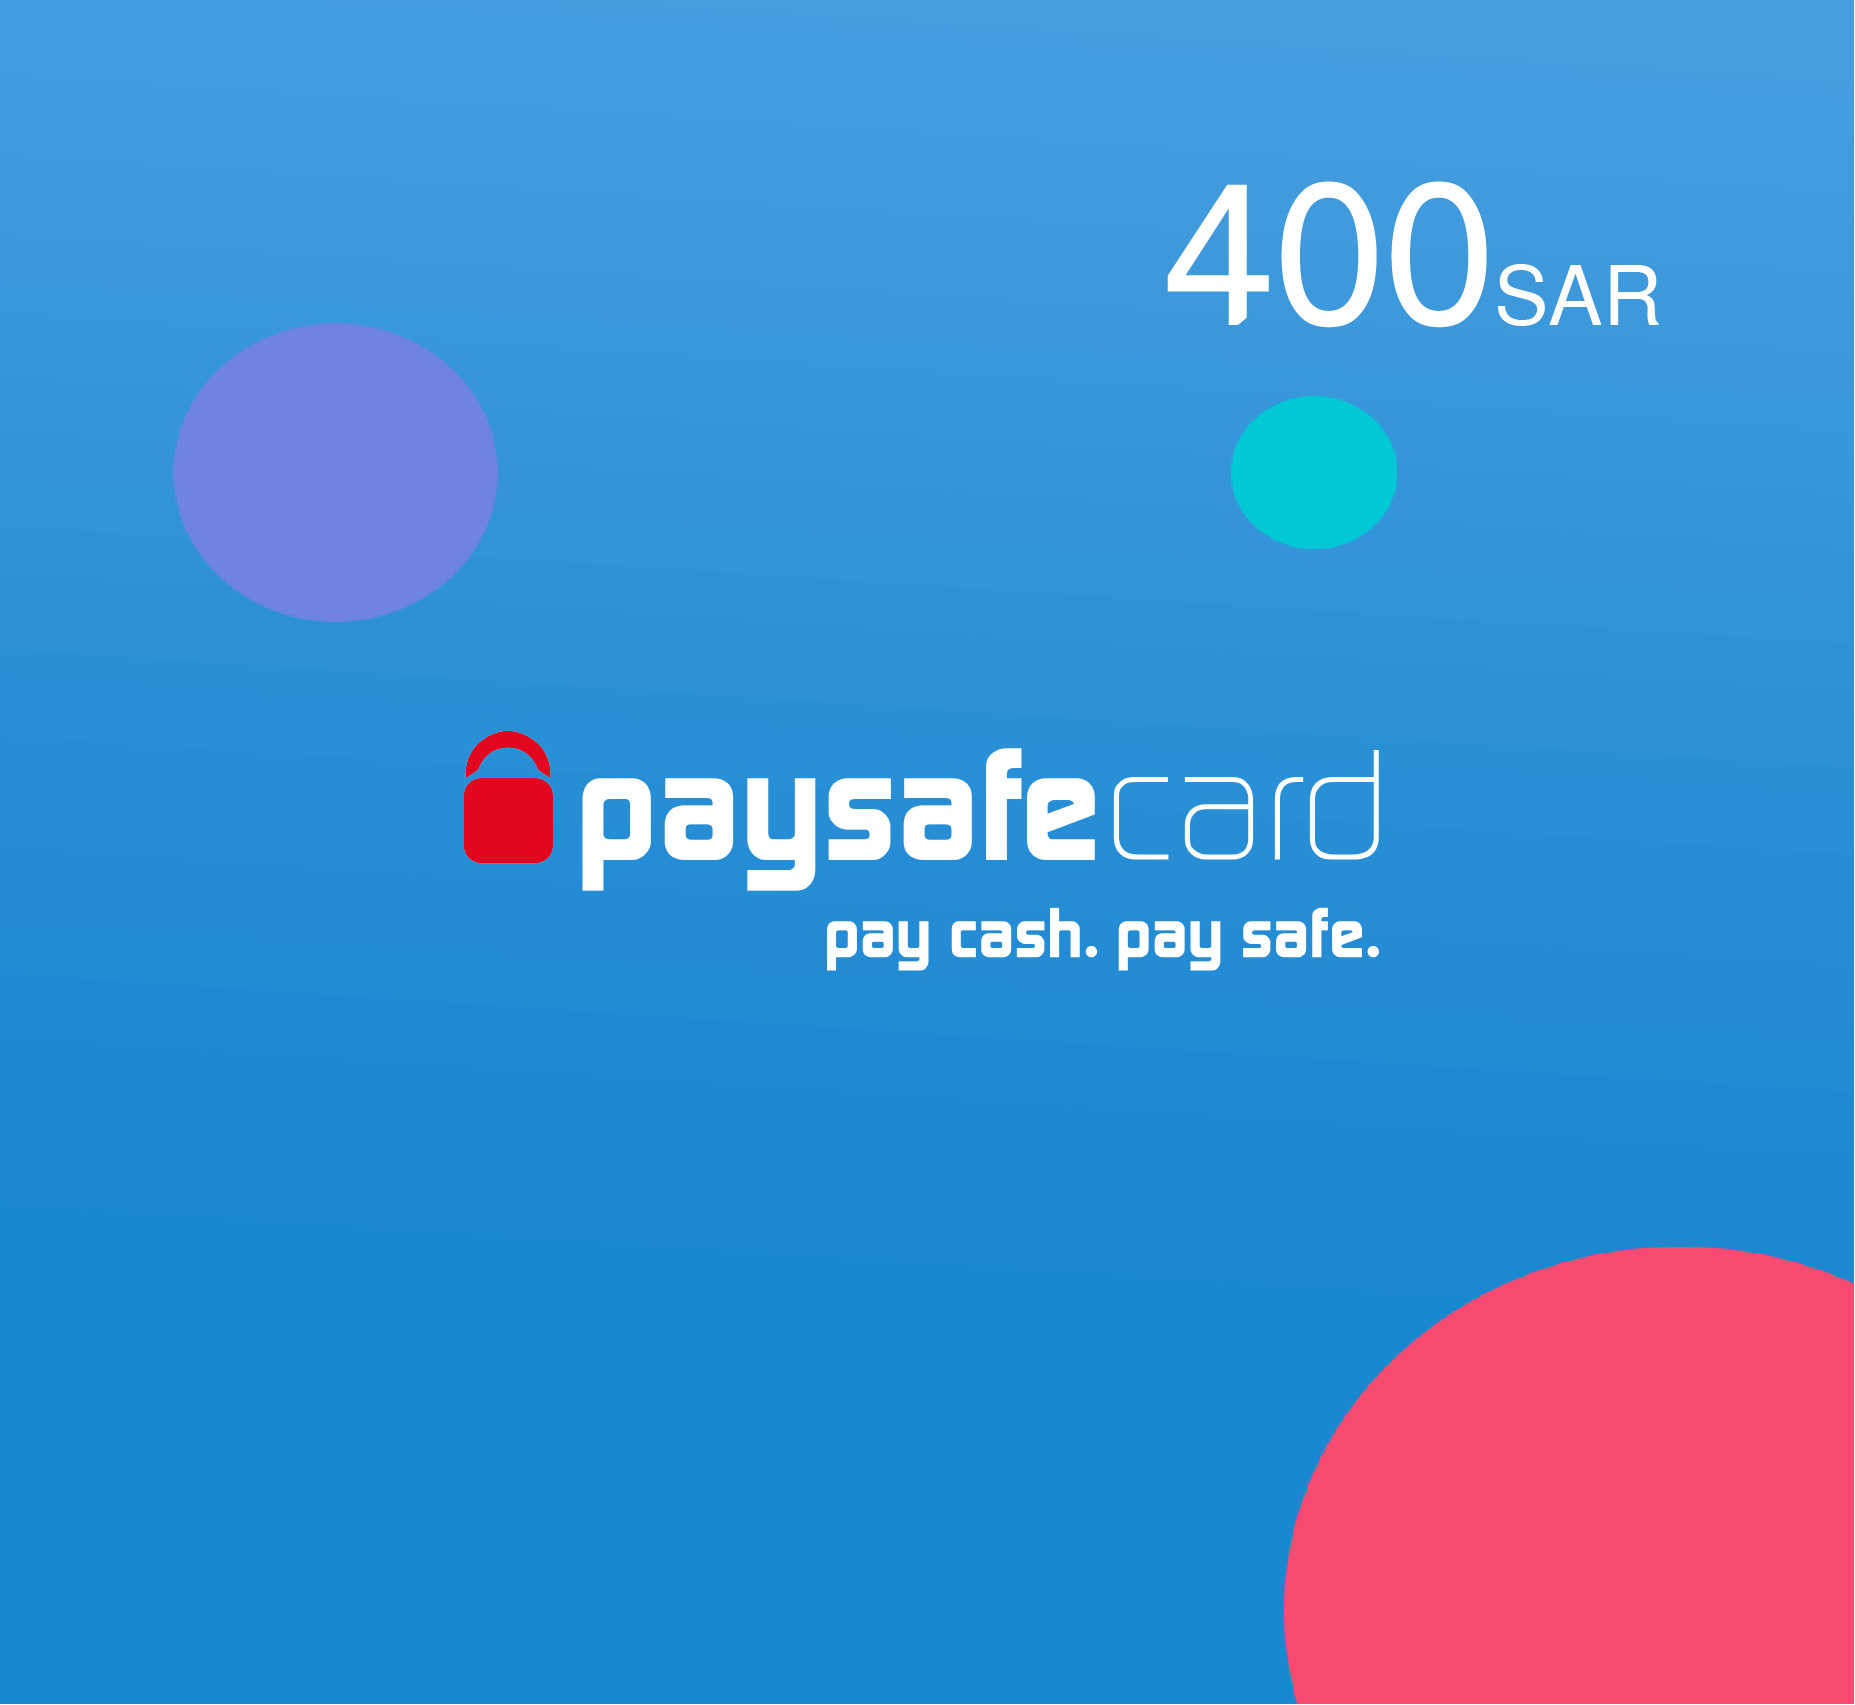 Paysafe card 400 SAR